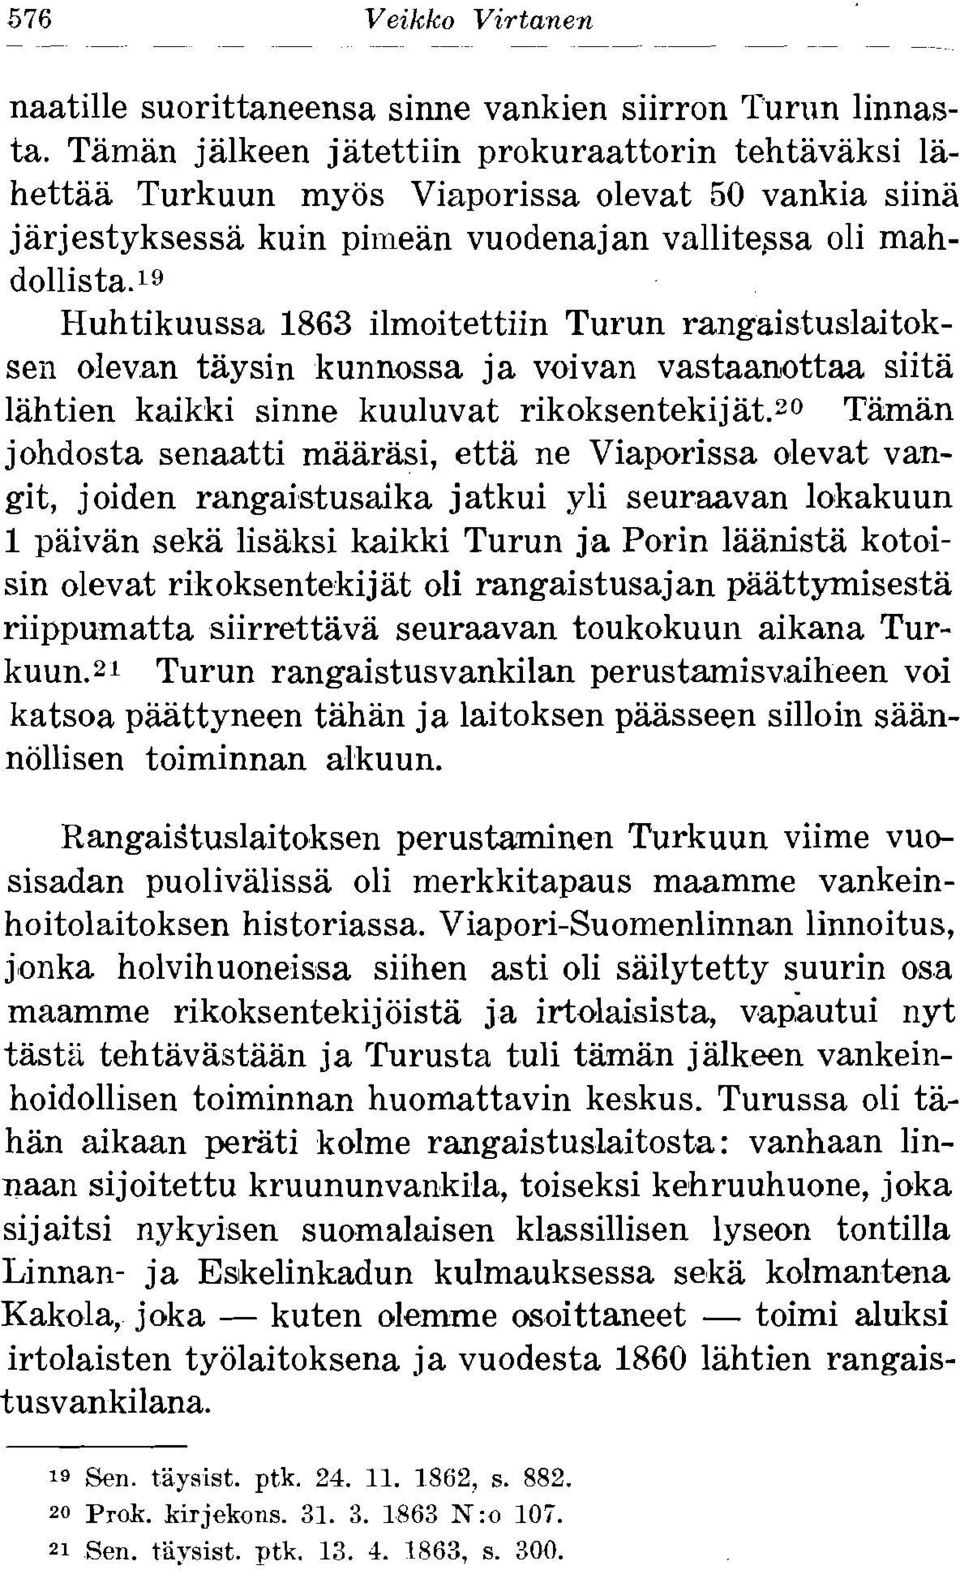 19 Huhtikuussa 1863 ilmoitettiin Turun rangaistuslaitokseii olevan taysin kunnossa ja voivan vastaanottaa siita lahtien kaikki sinne kuuluvat rikoksentekijat.